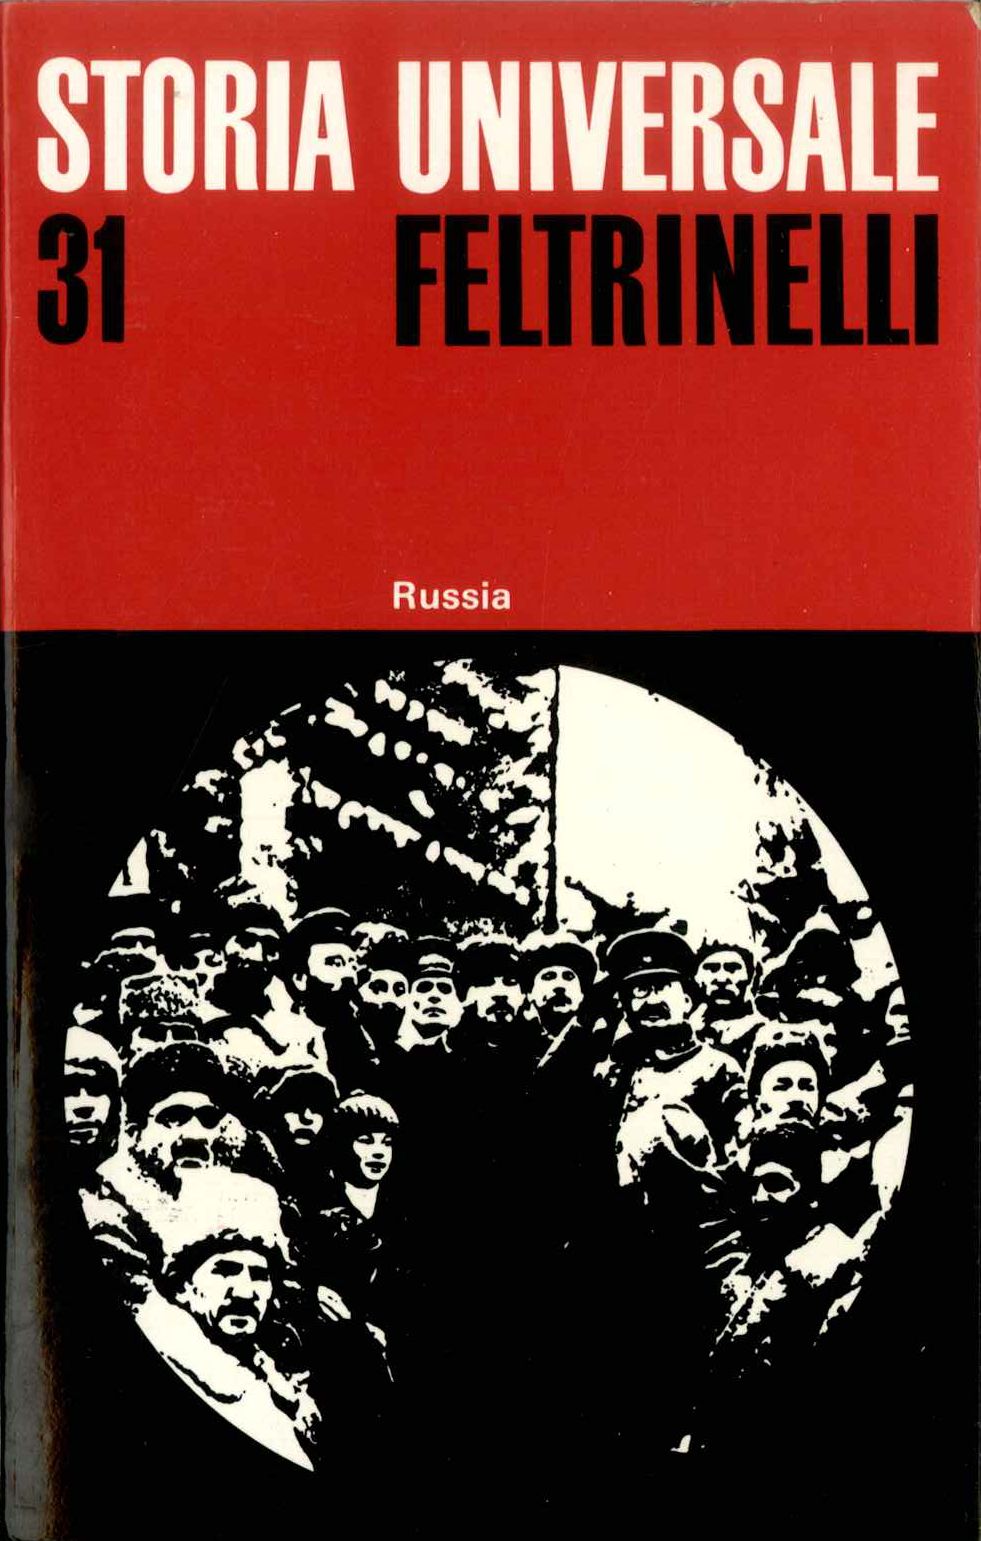 S.U.F. Vol. 31. Russia